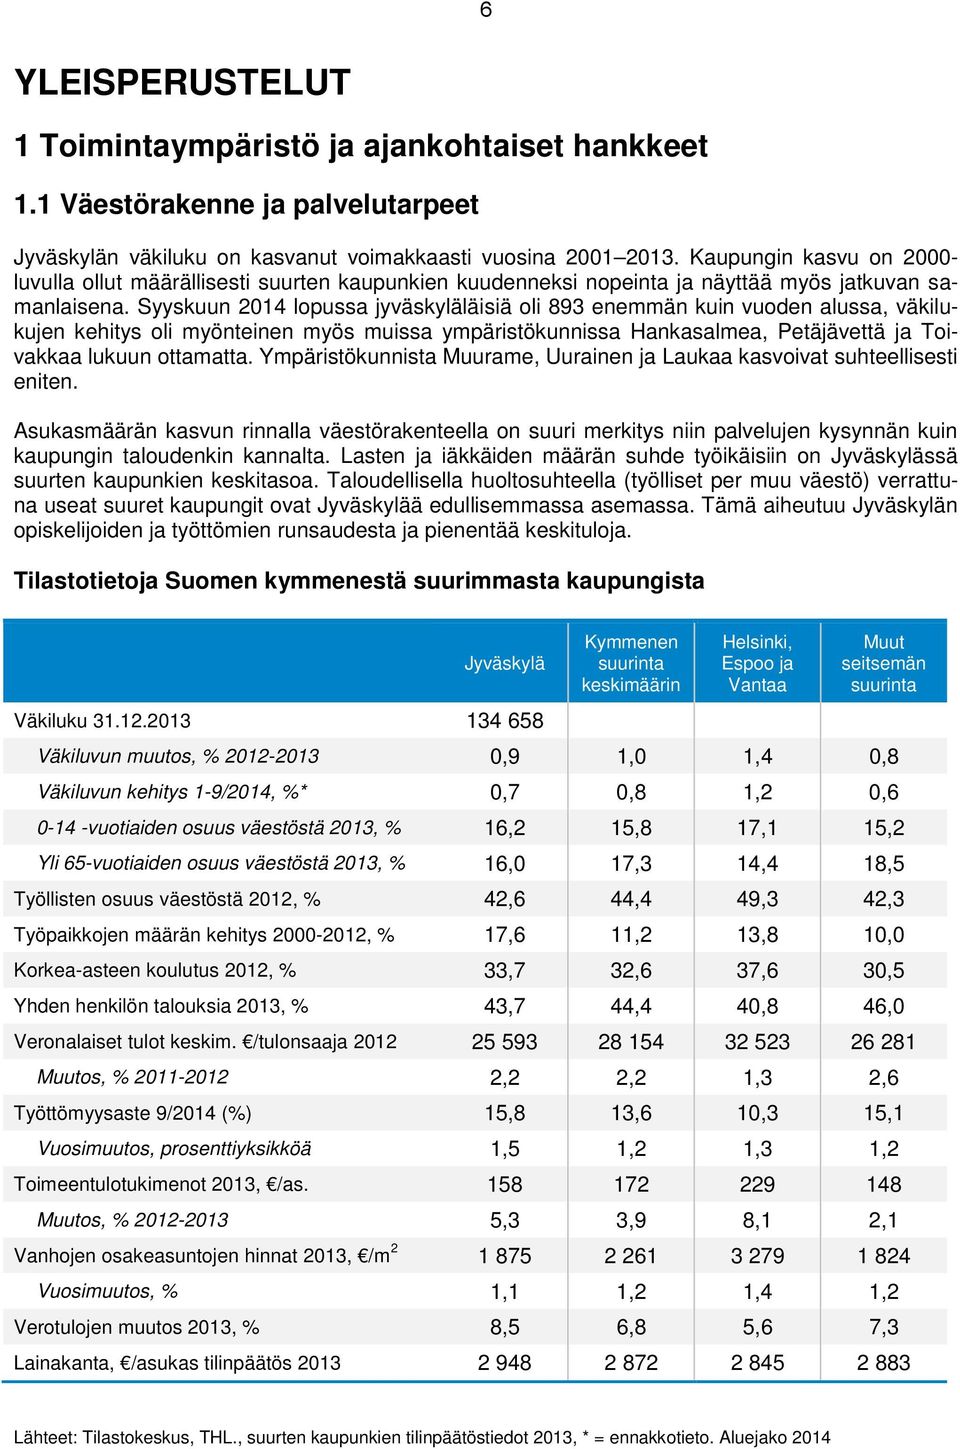 Syyskuun 2014 lopussa jyväskyläläisiä oli 893 enemmän kuin vuoden alussa, väkilukujen kehitys oli myönteinen myös muissa ympäristökunnissa Hankasalmea, Petäjävettä ja Toivakkaa lukuun ottamatta.